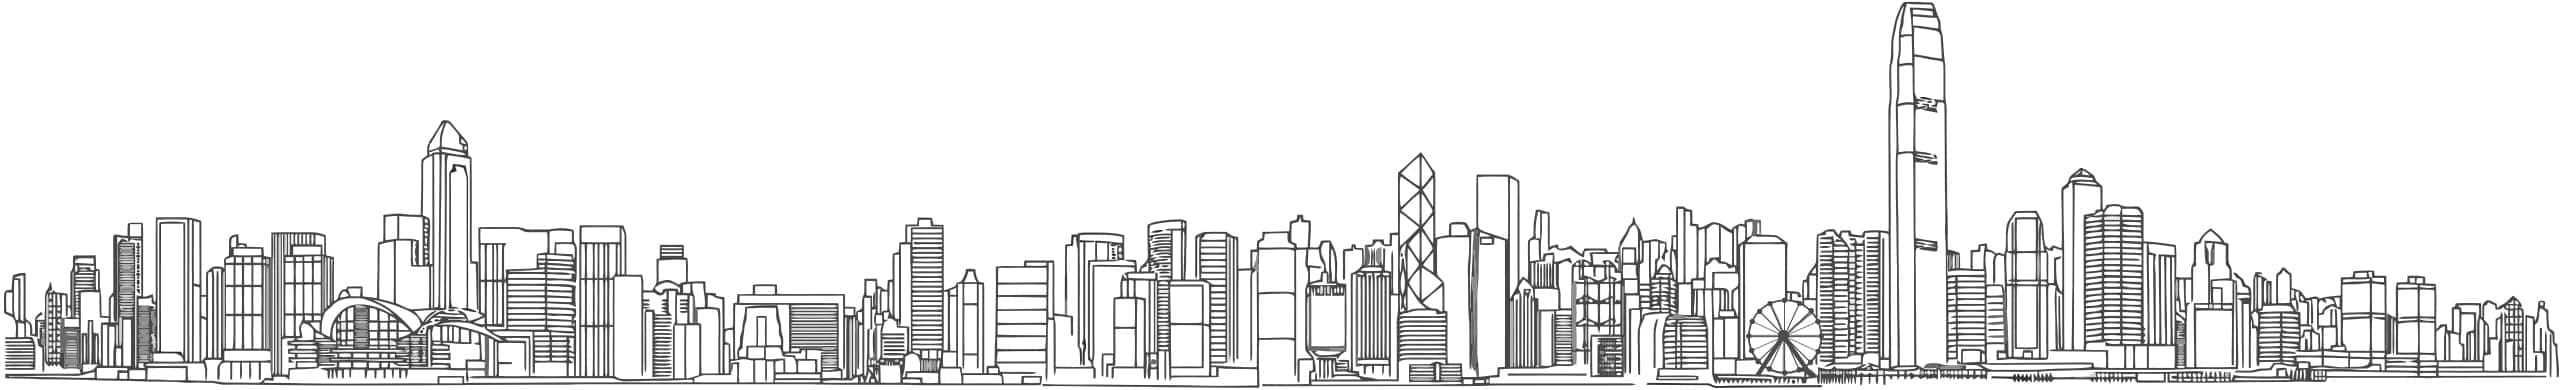 认识我们 - 温国伦香港网页设计